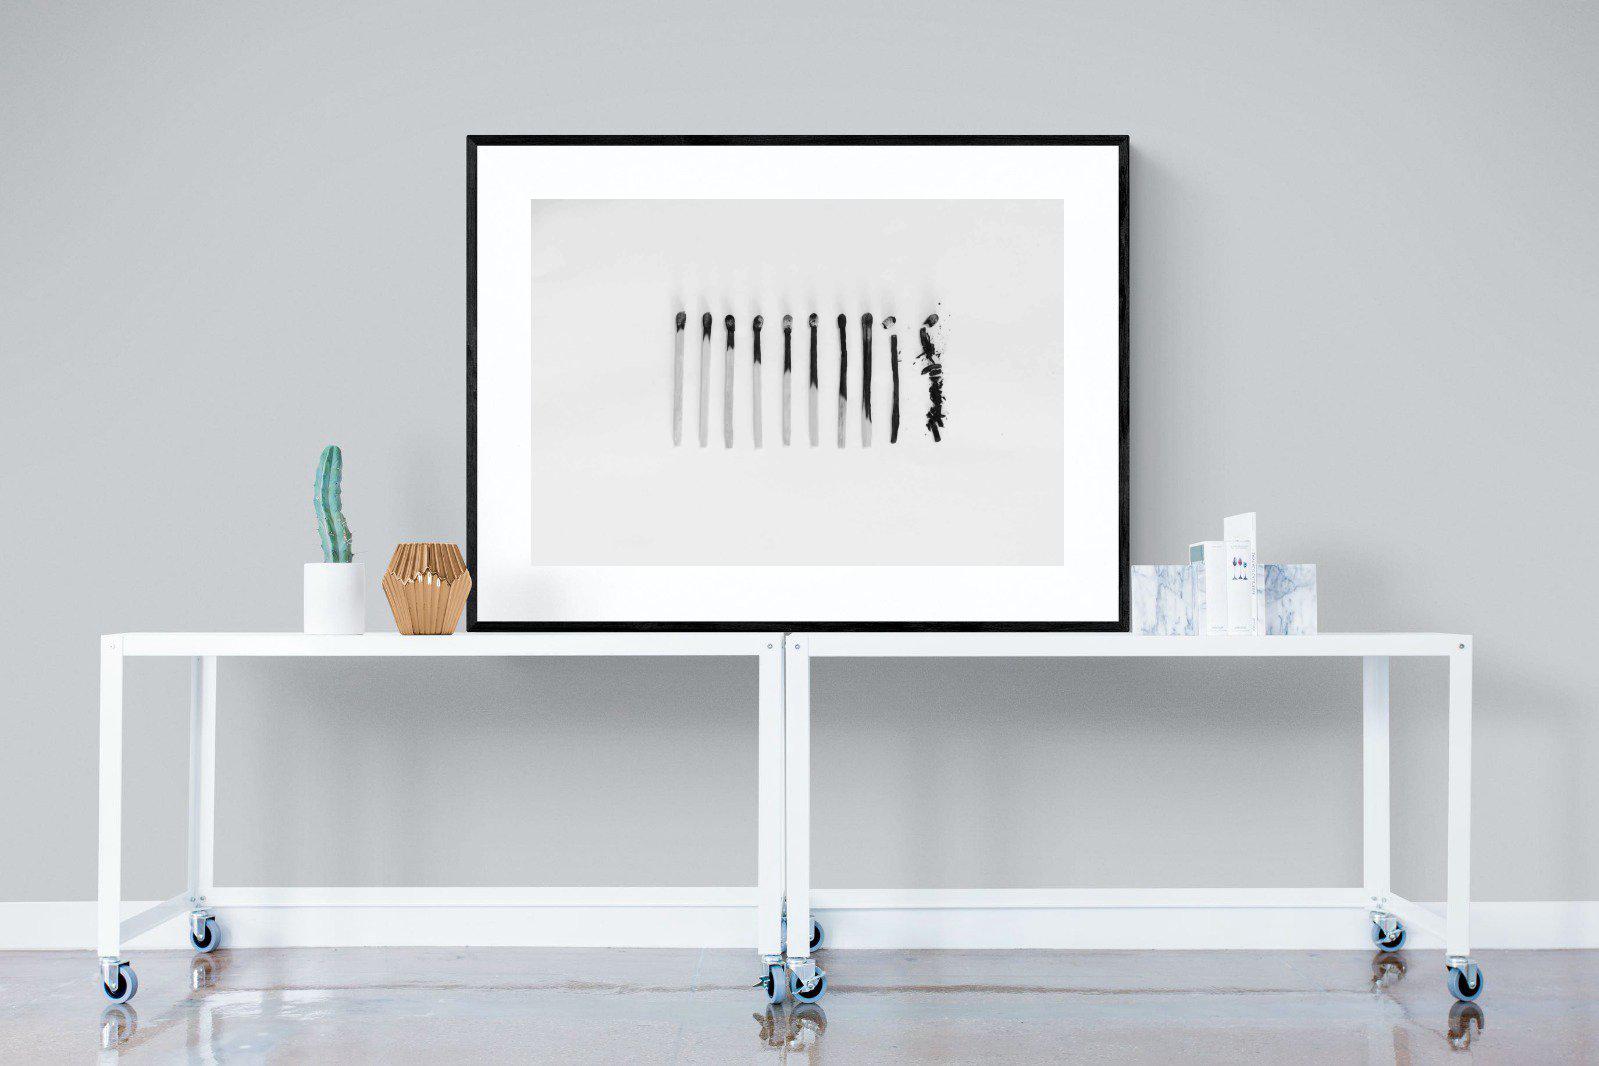 Matchsticks-Wall_Art-120 x 90cm-Framed Print-Black-Pixalot